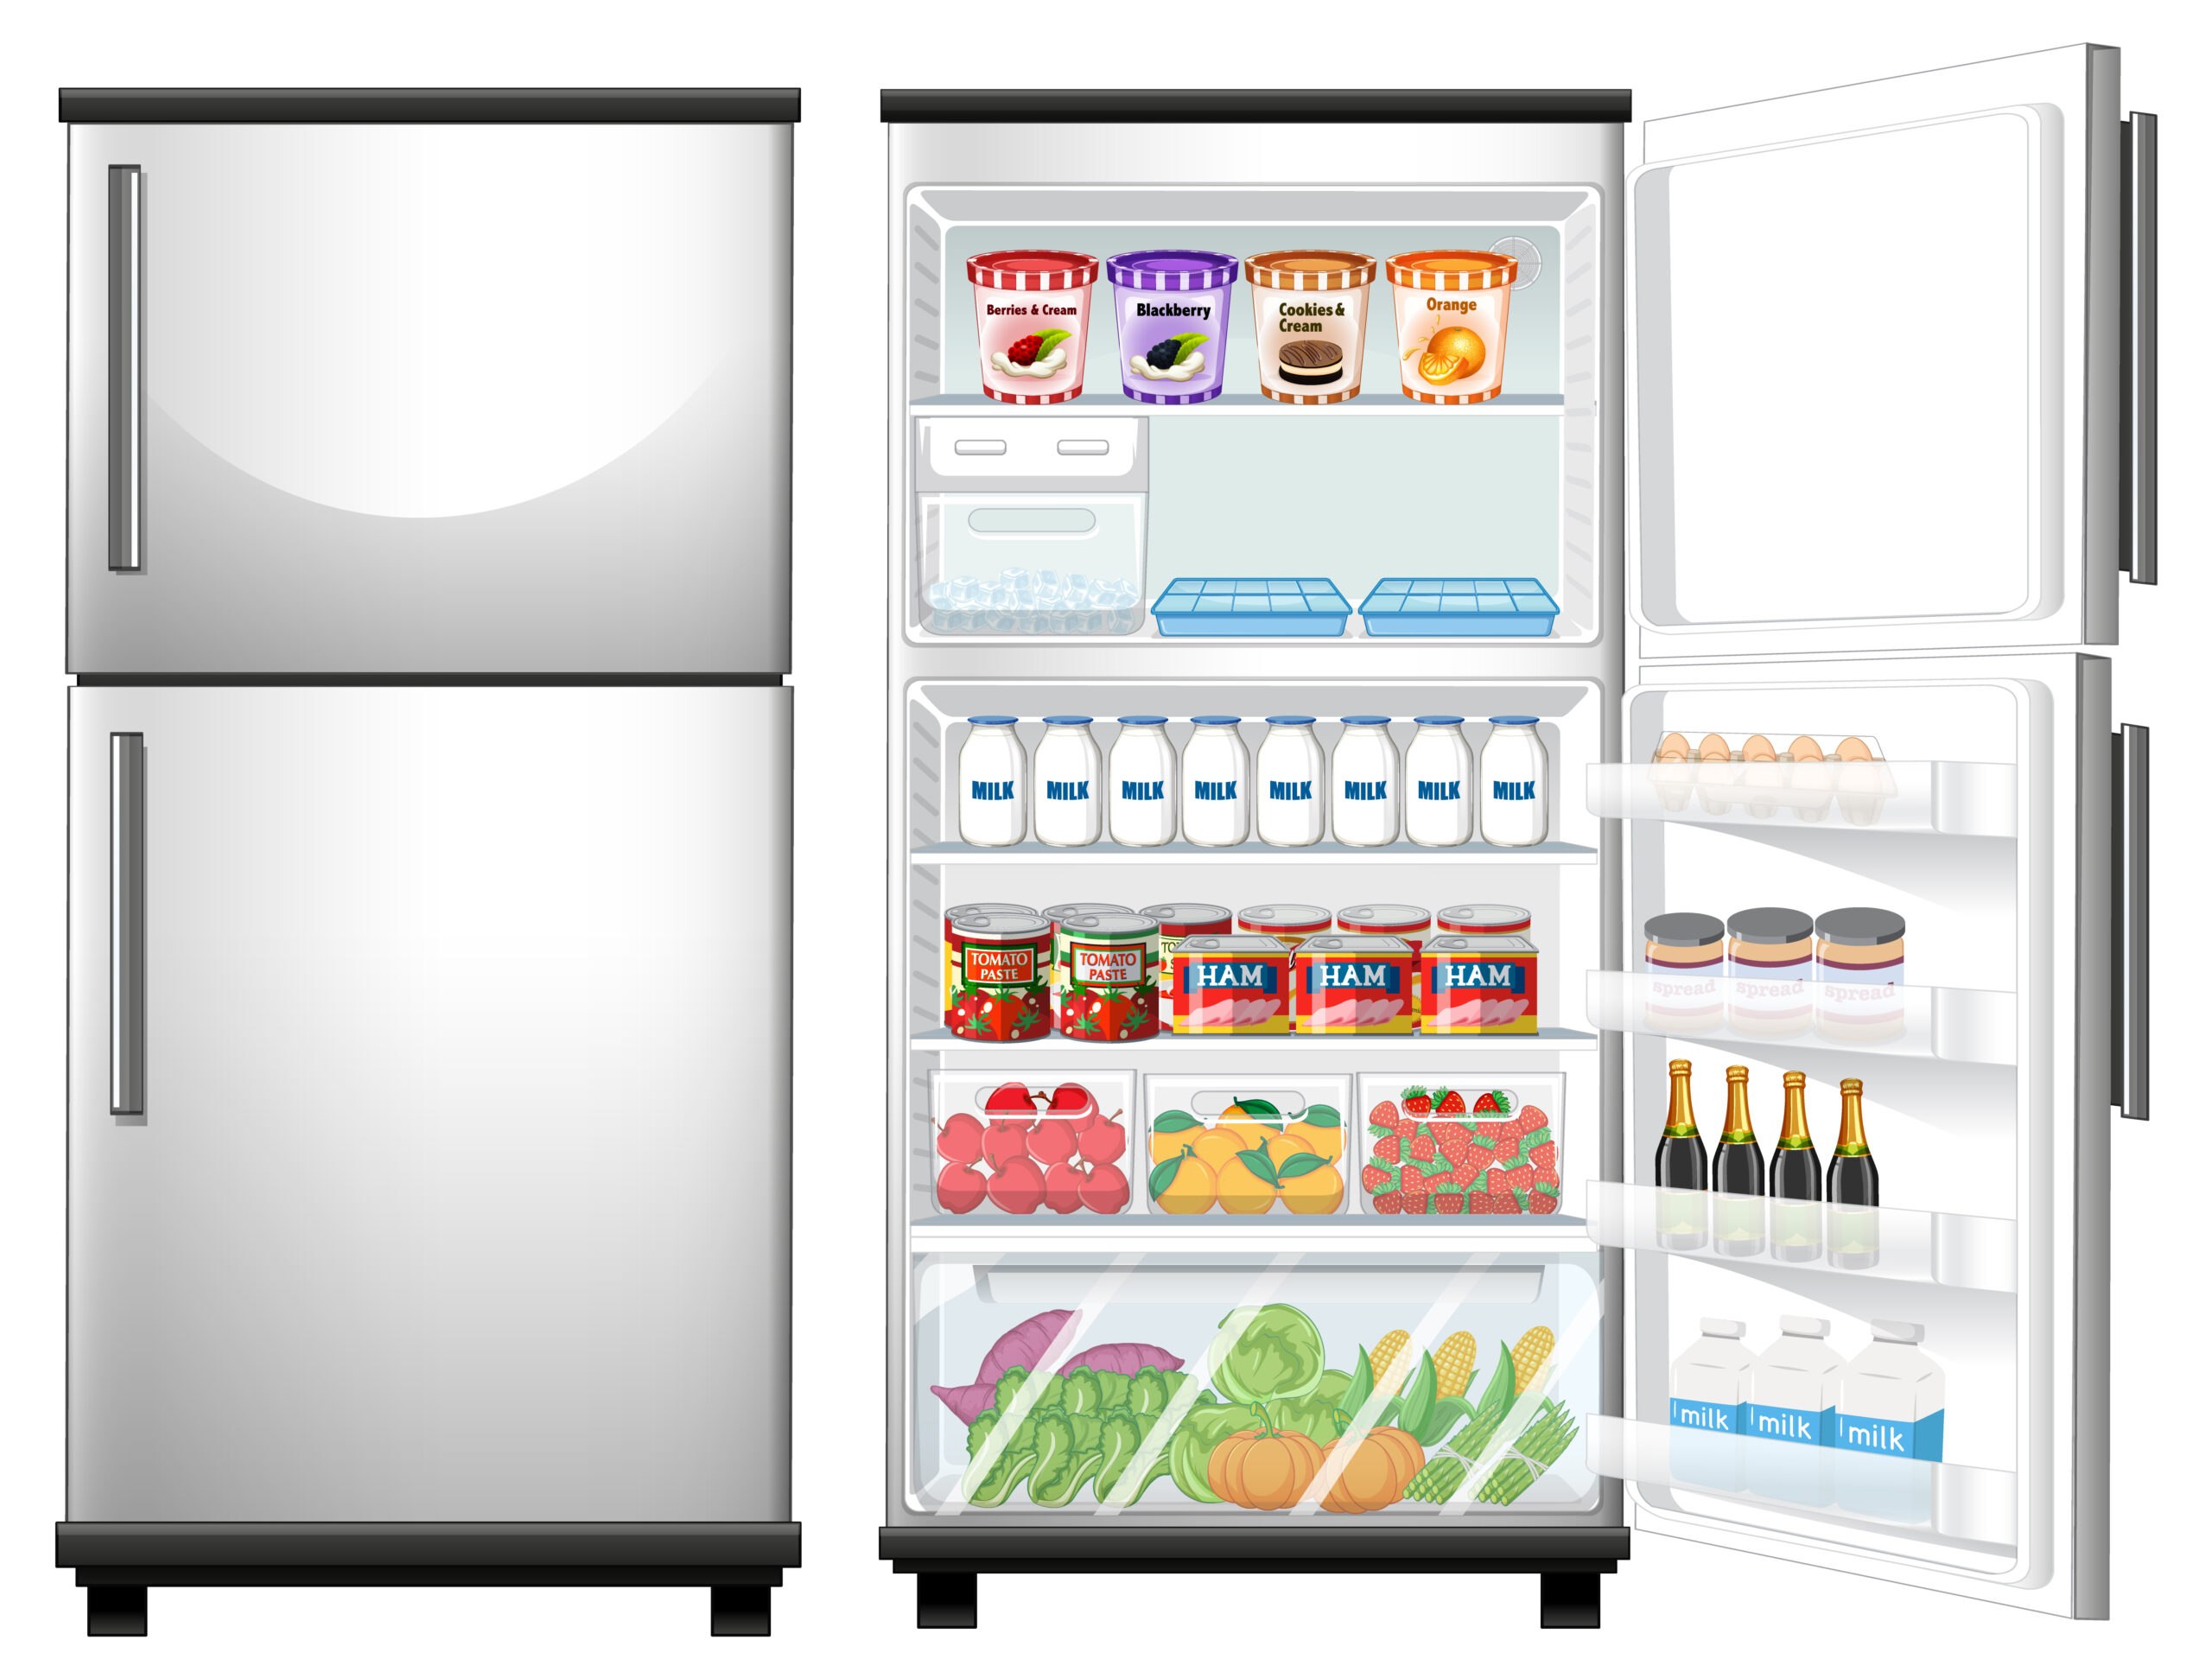 Conseils d'entretien pour les réfrigérateurs afin de les aider à fonctionner au mieux